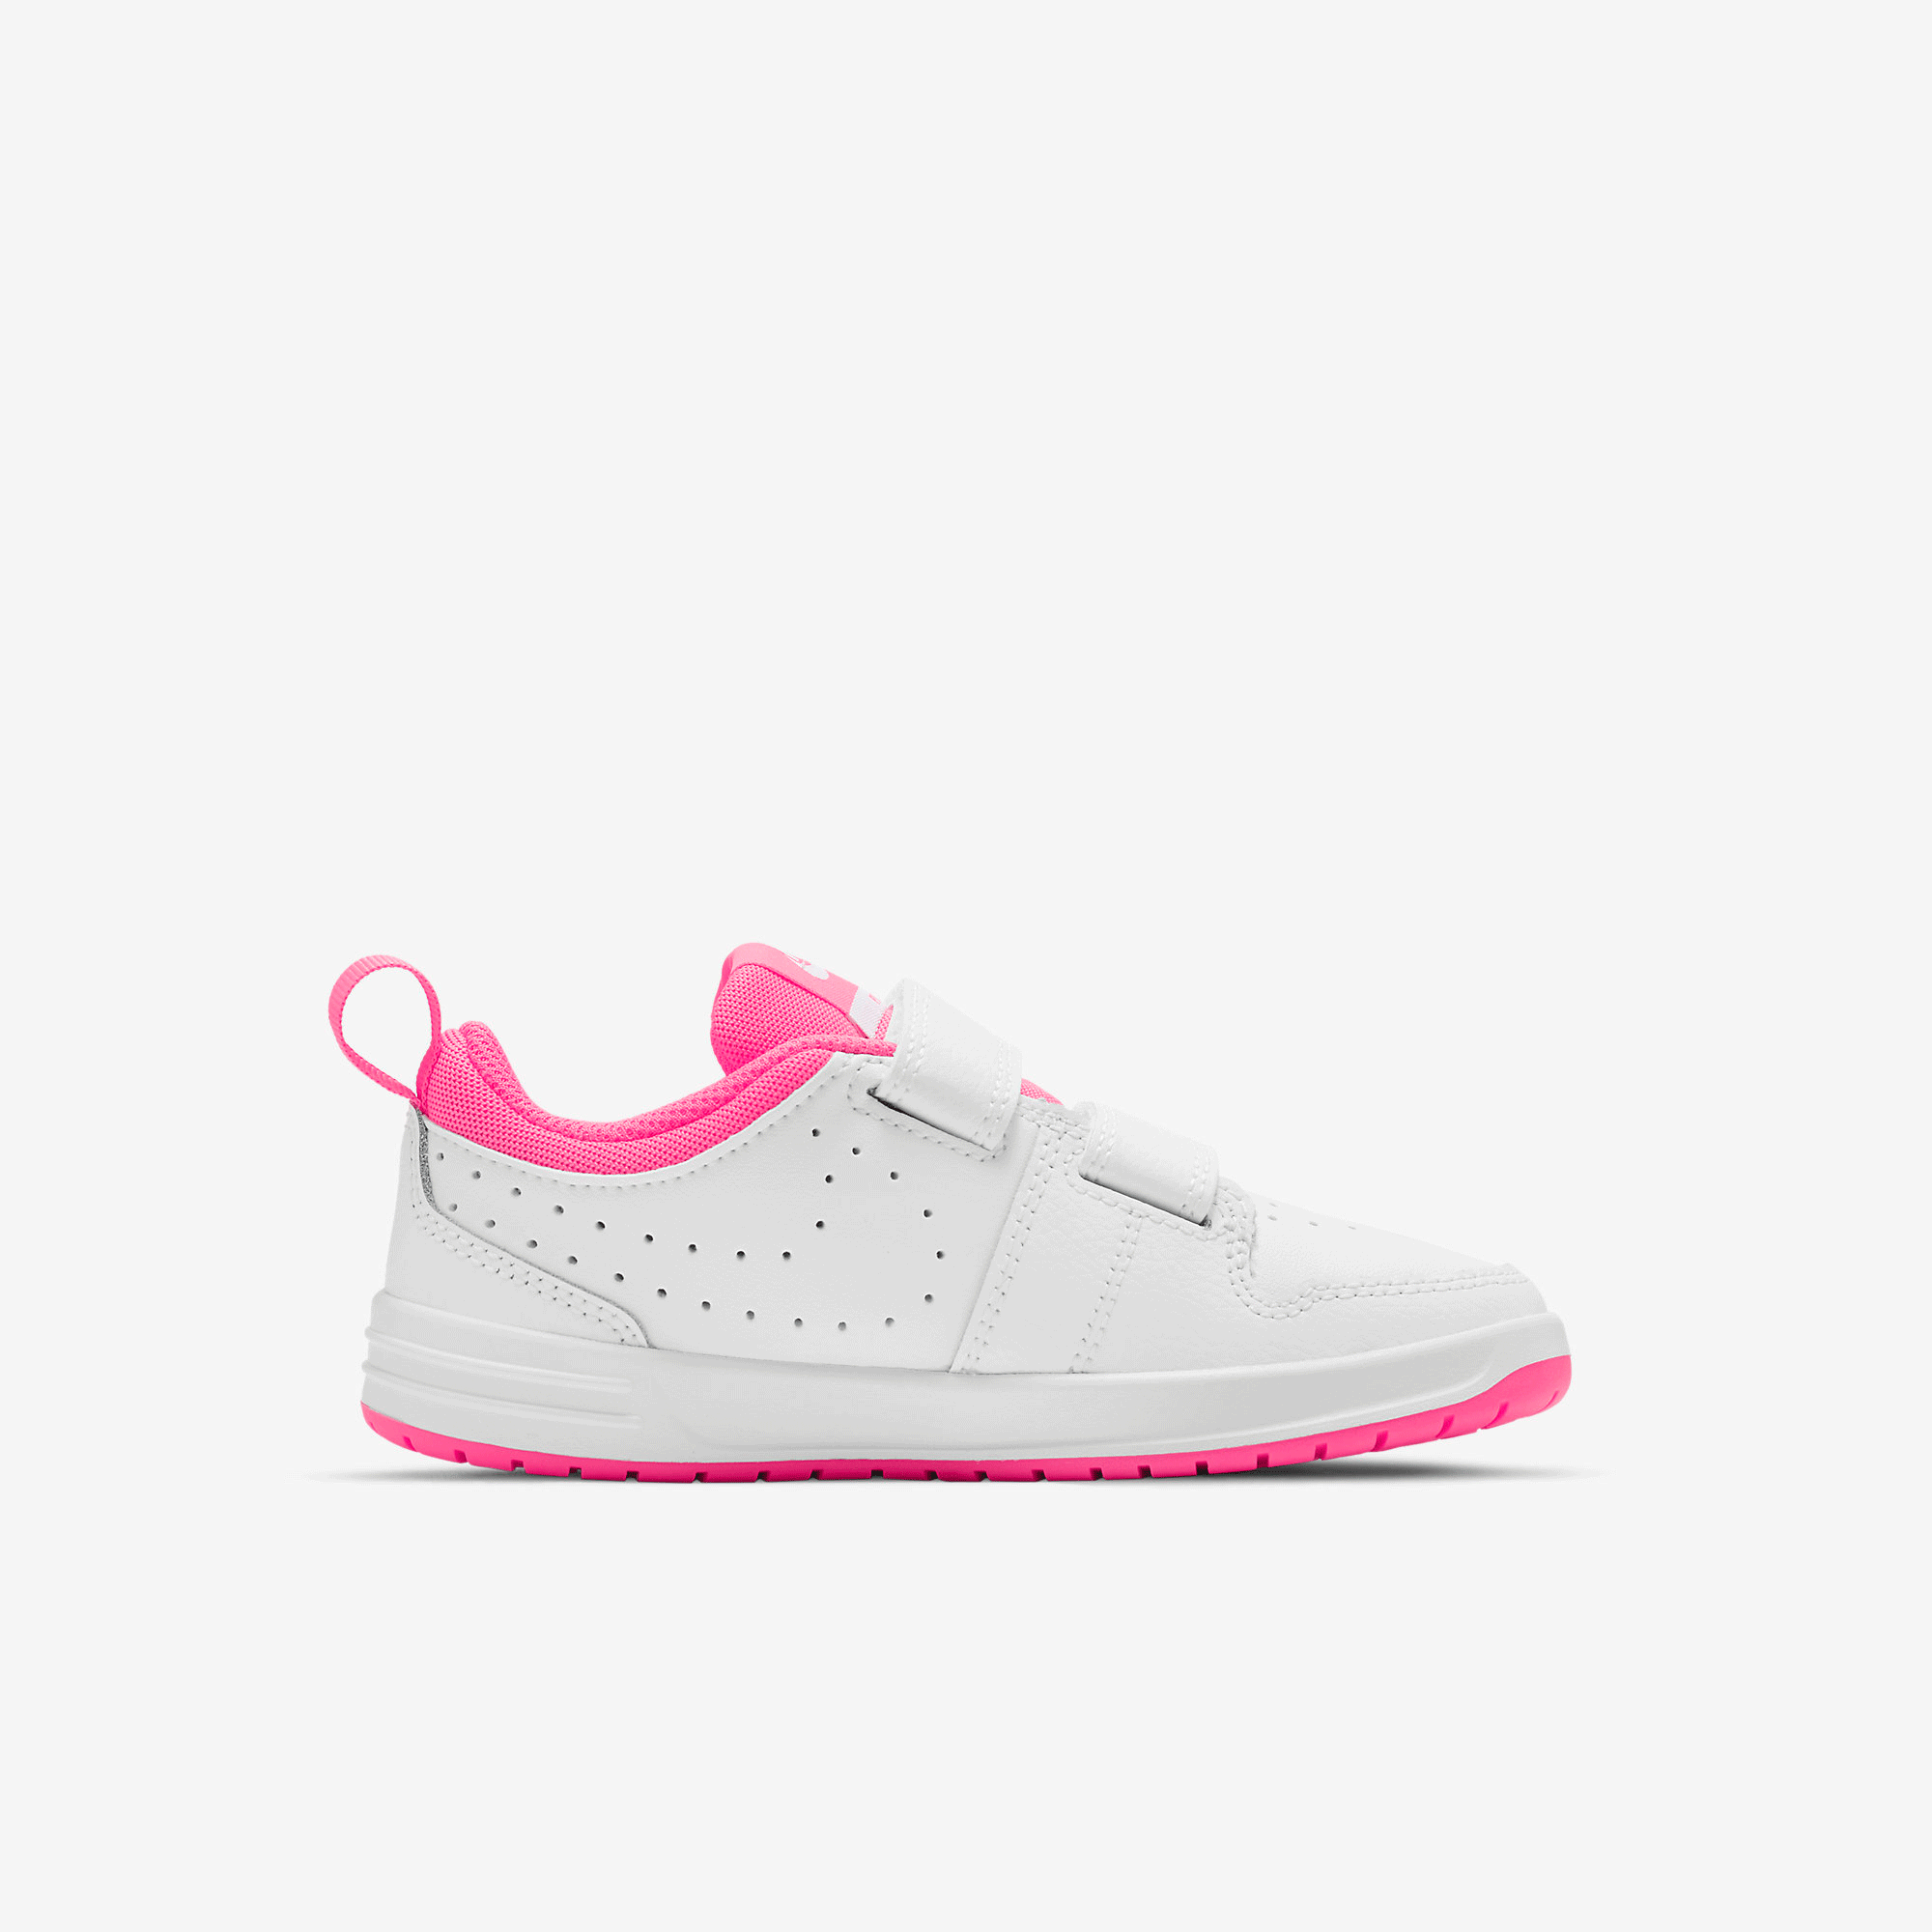 Nike Kids Pico 5 Shoes - White/Pink - Tennisnuts.com